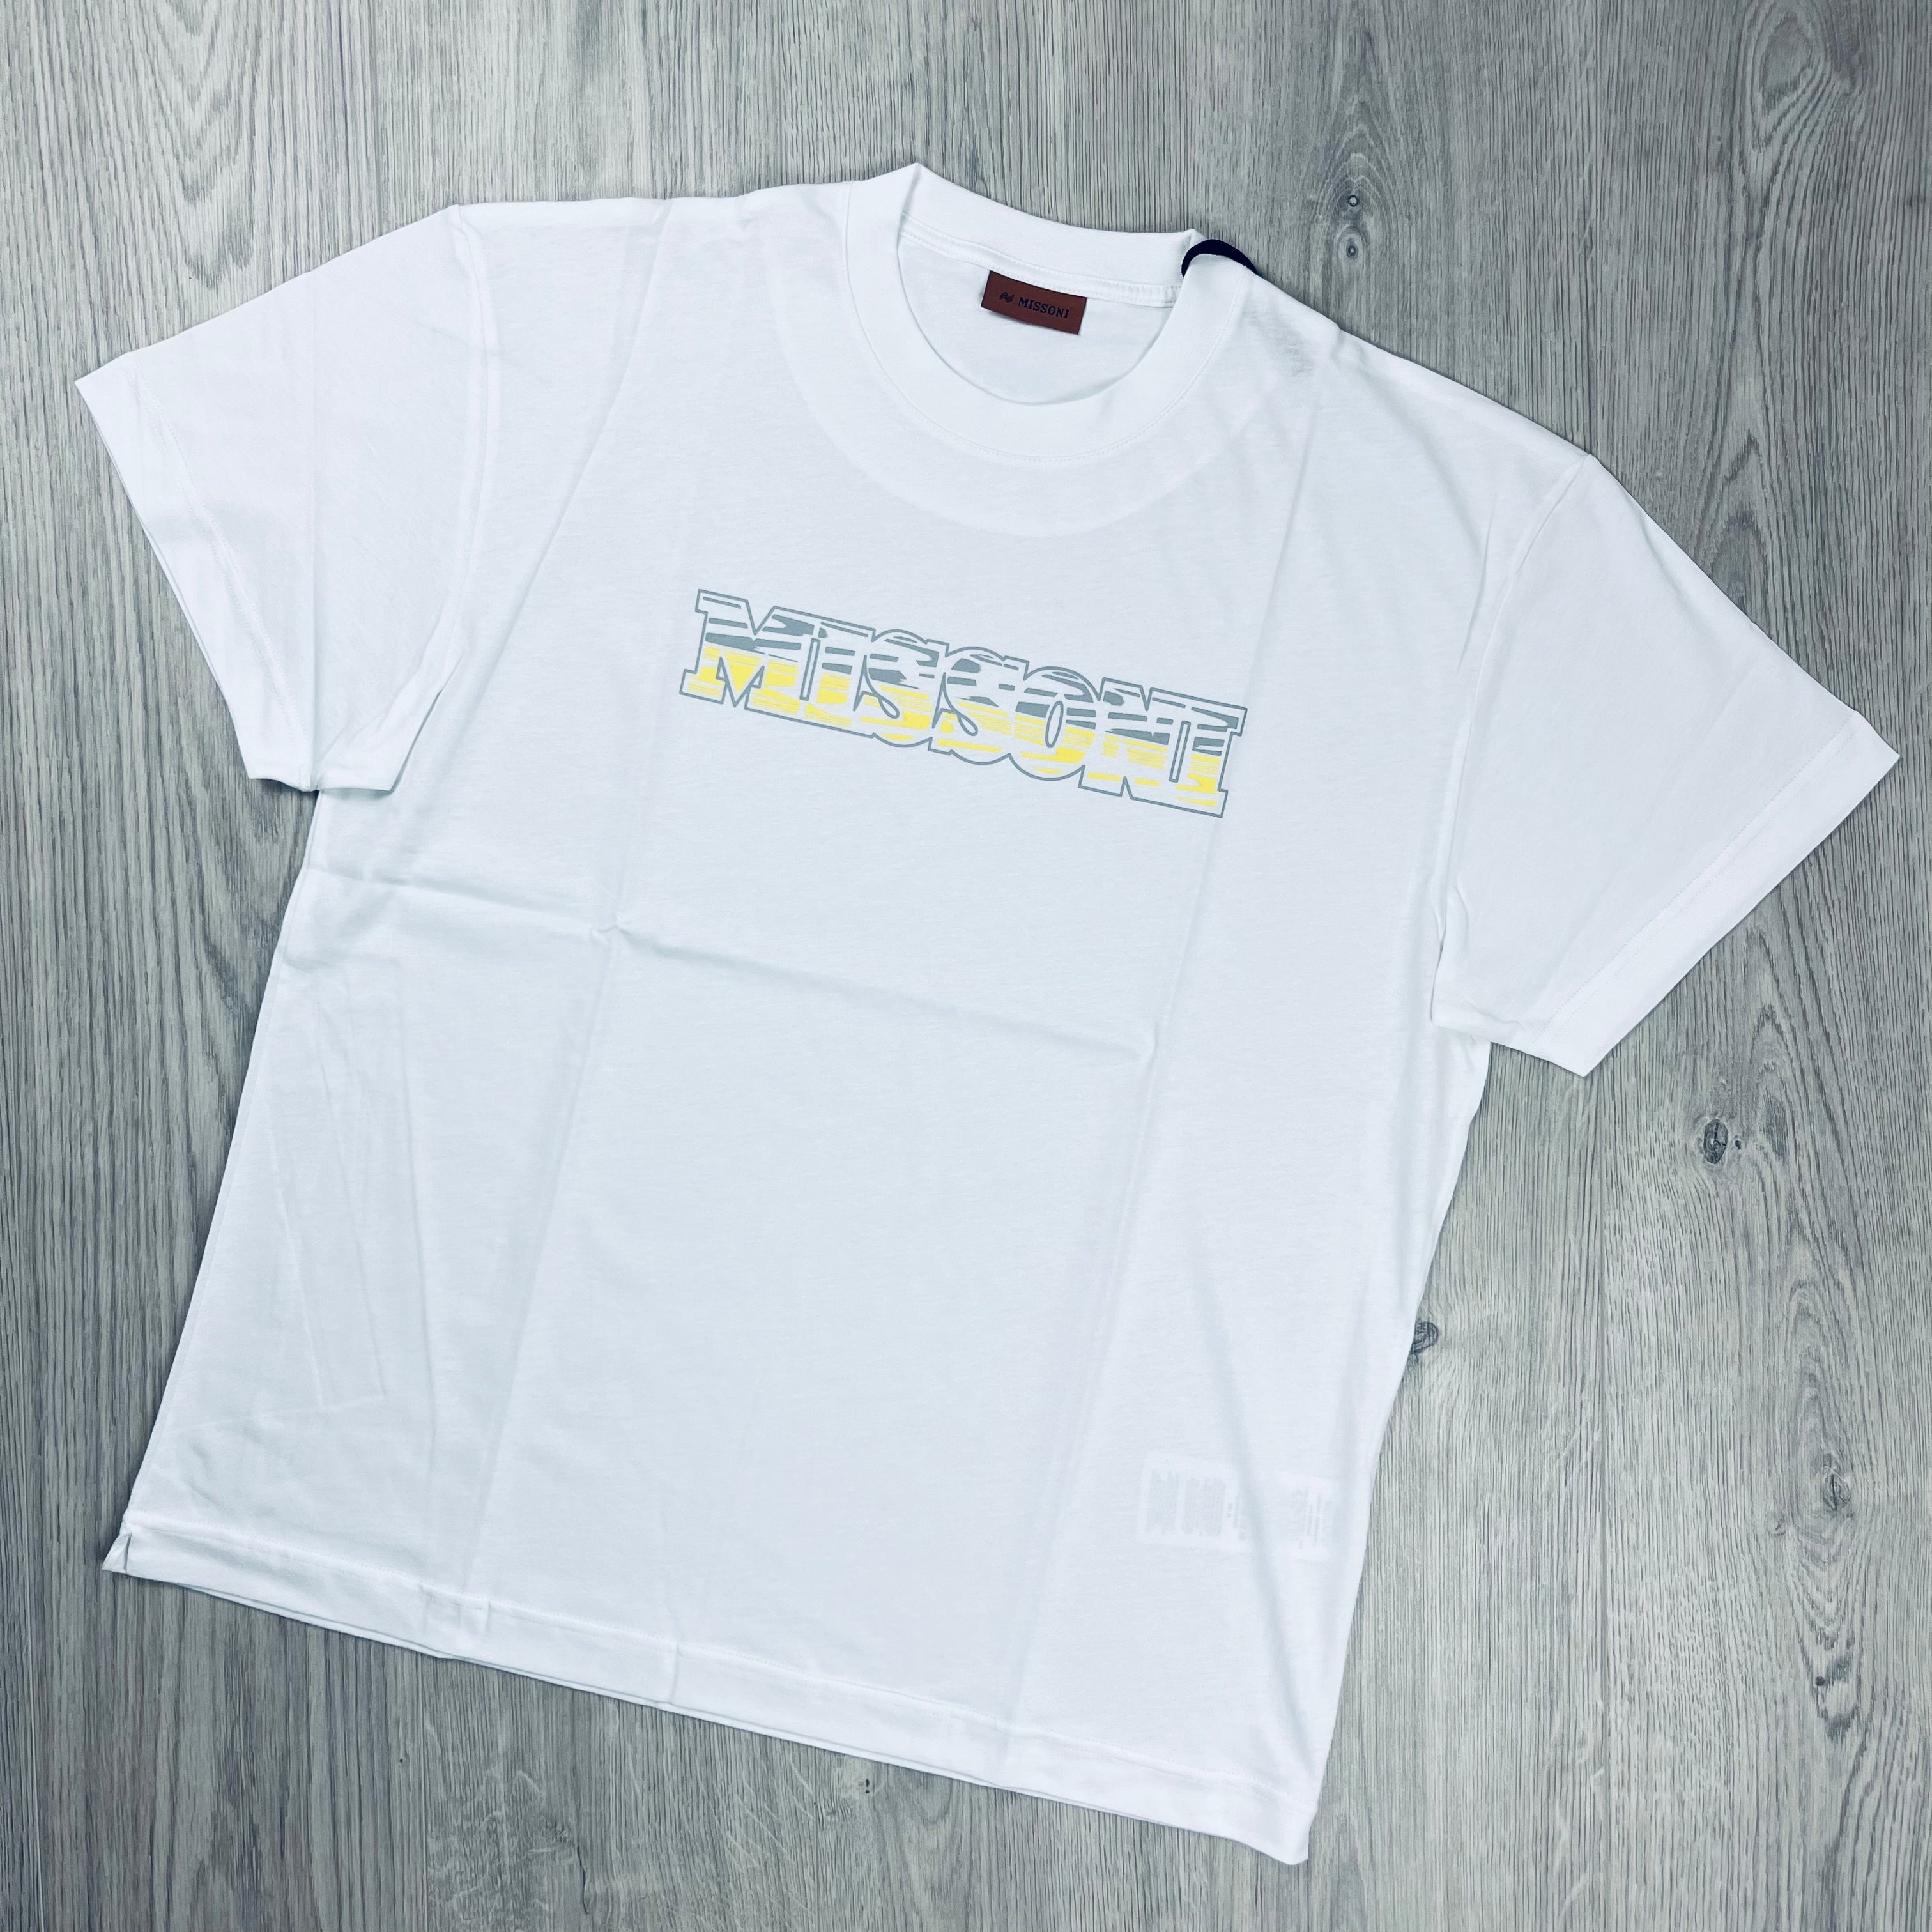 Missoni Printed T-Shirt